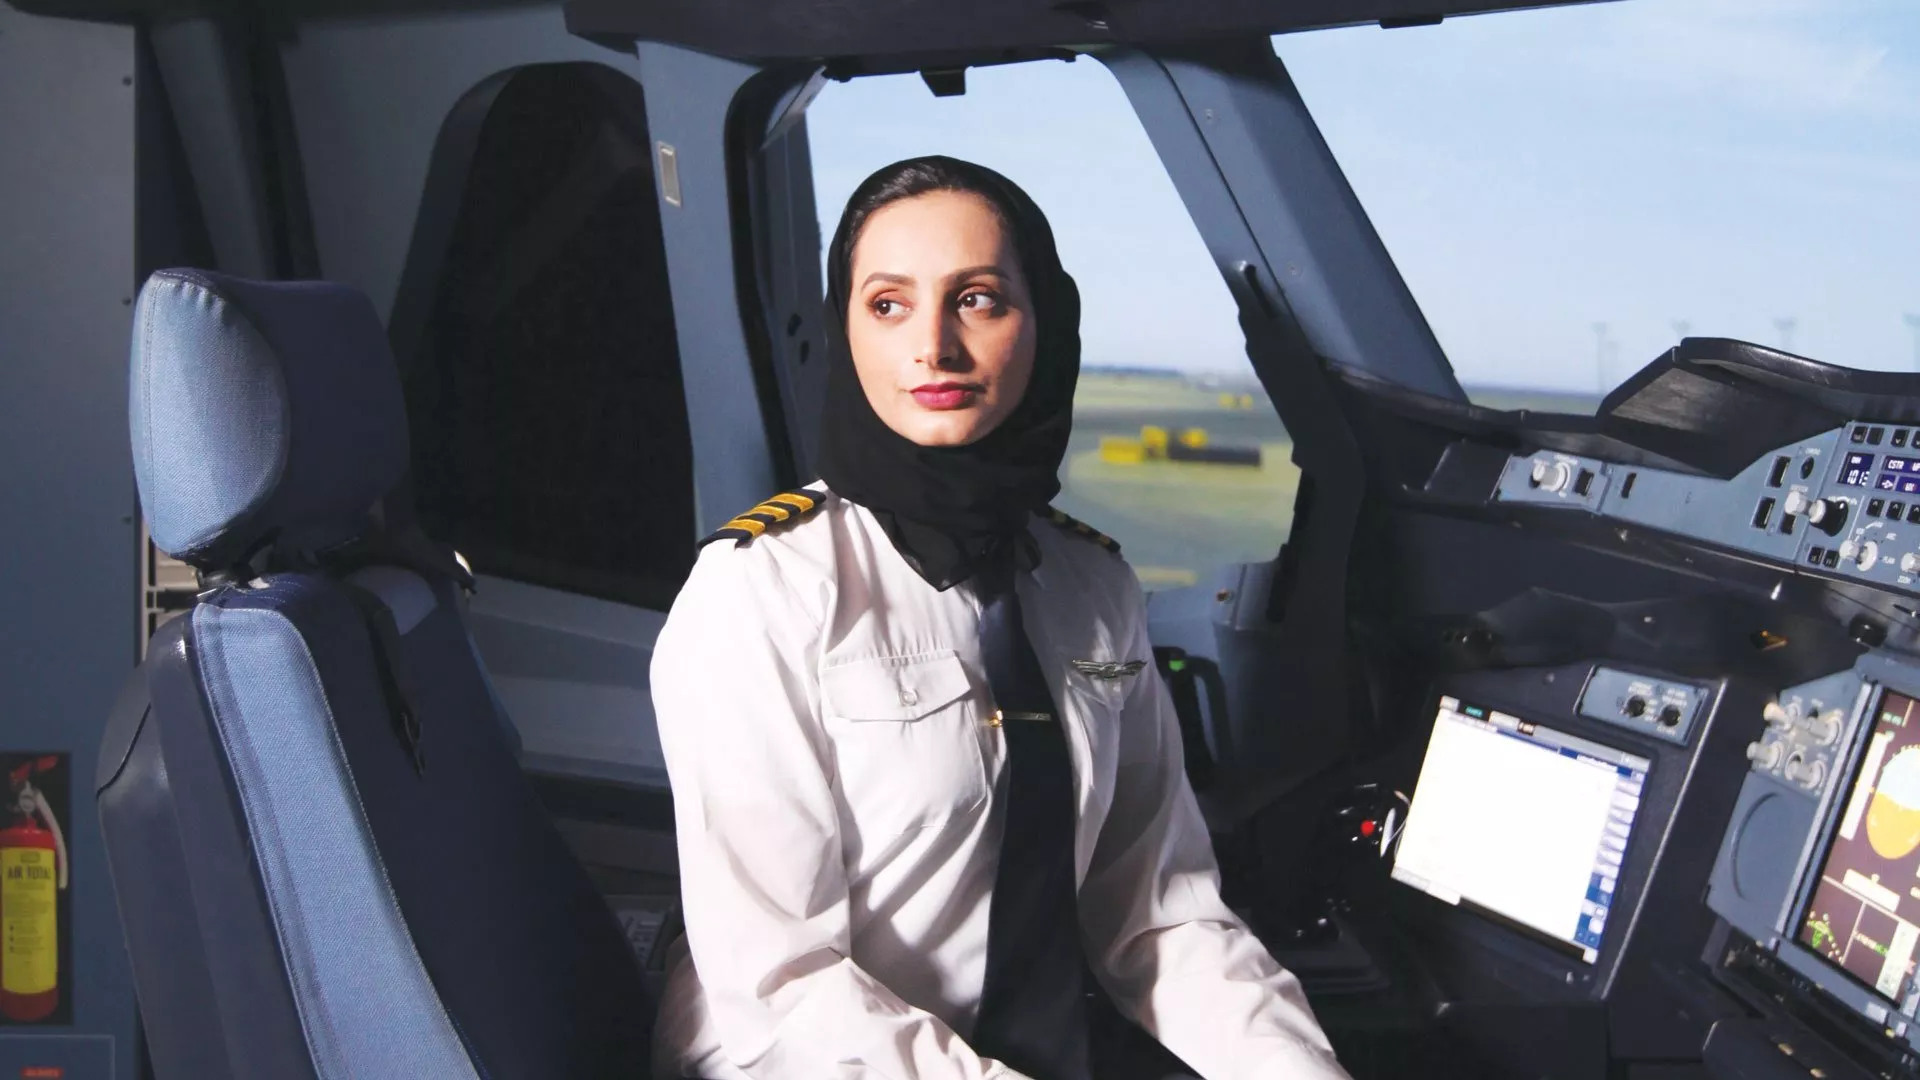 عائشة المنصوري تعيّن كأول امرأة اماراتية برتبة كابتن طيران... أنا سعيدة جداً وفخورة